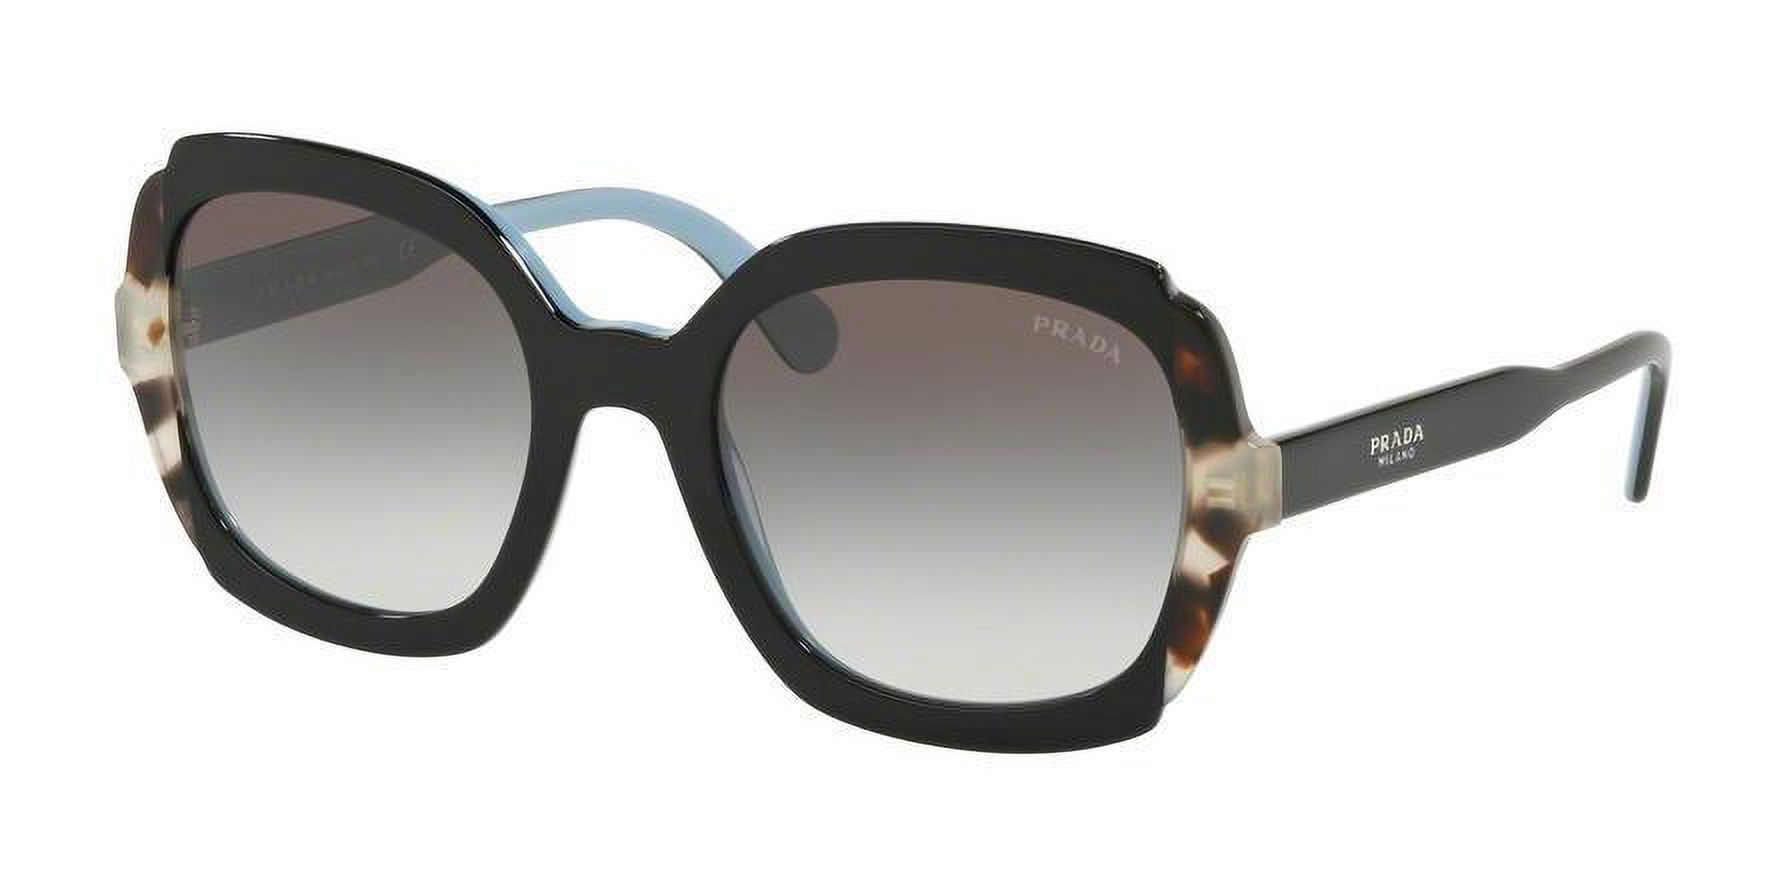 Prada Heritage PR 16US Plastic Womens Square Sunglasses Black Pink Medium Havana 54mm Adult - image 2 of 6